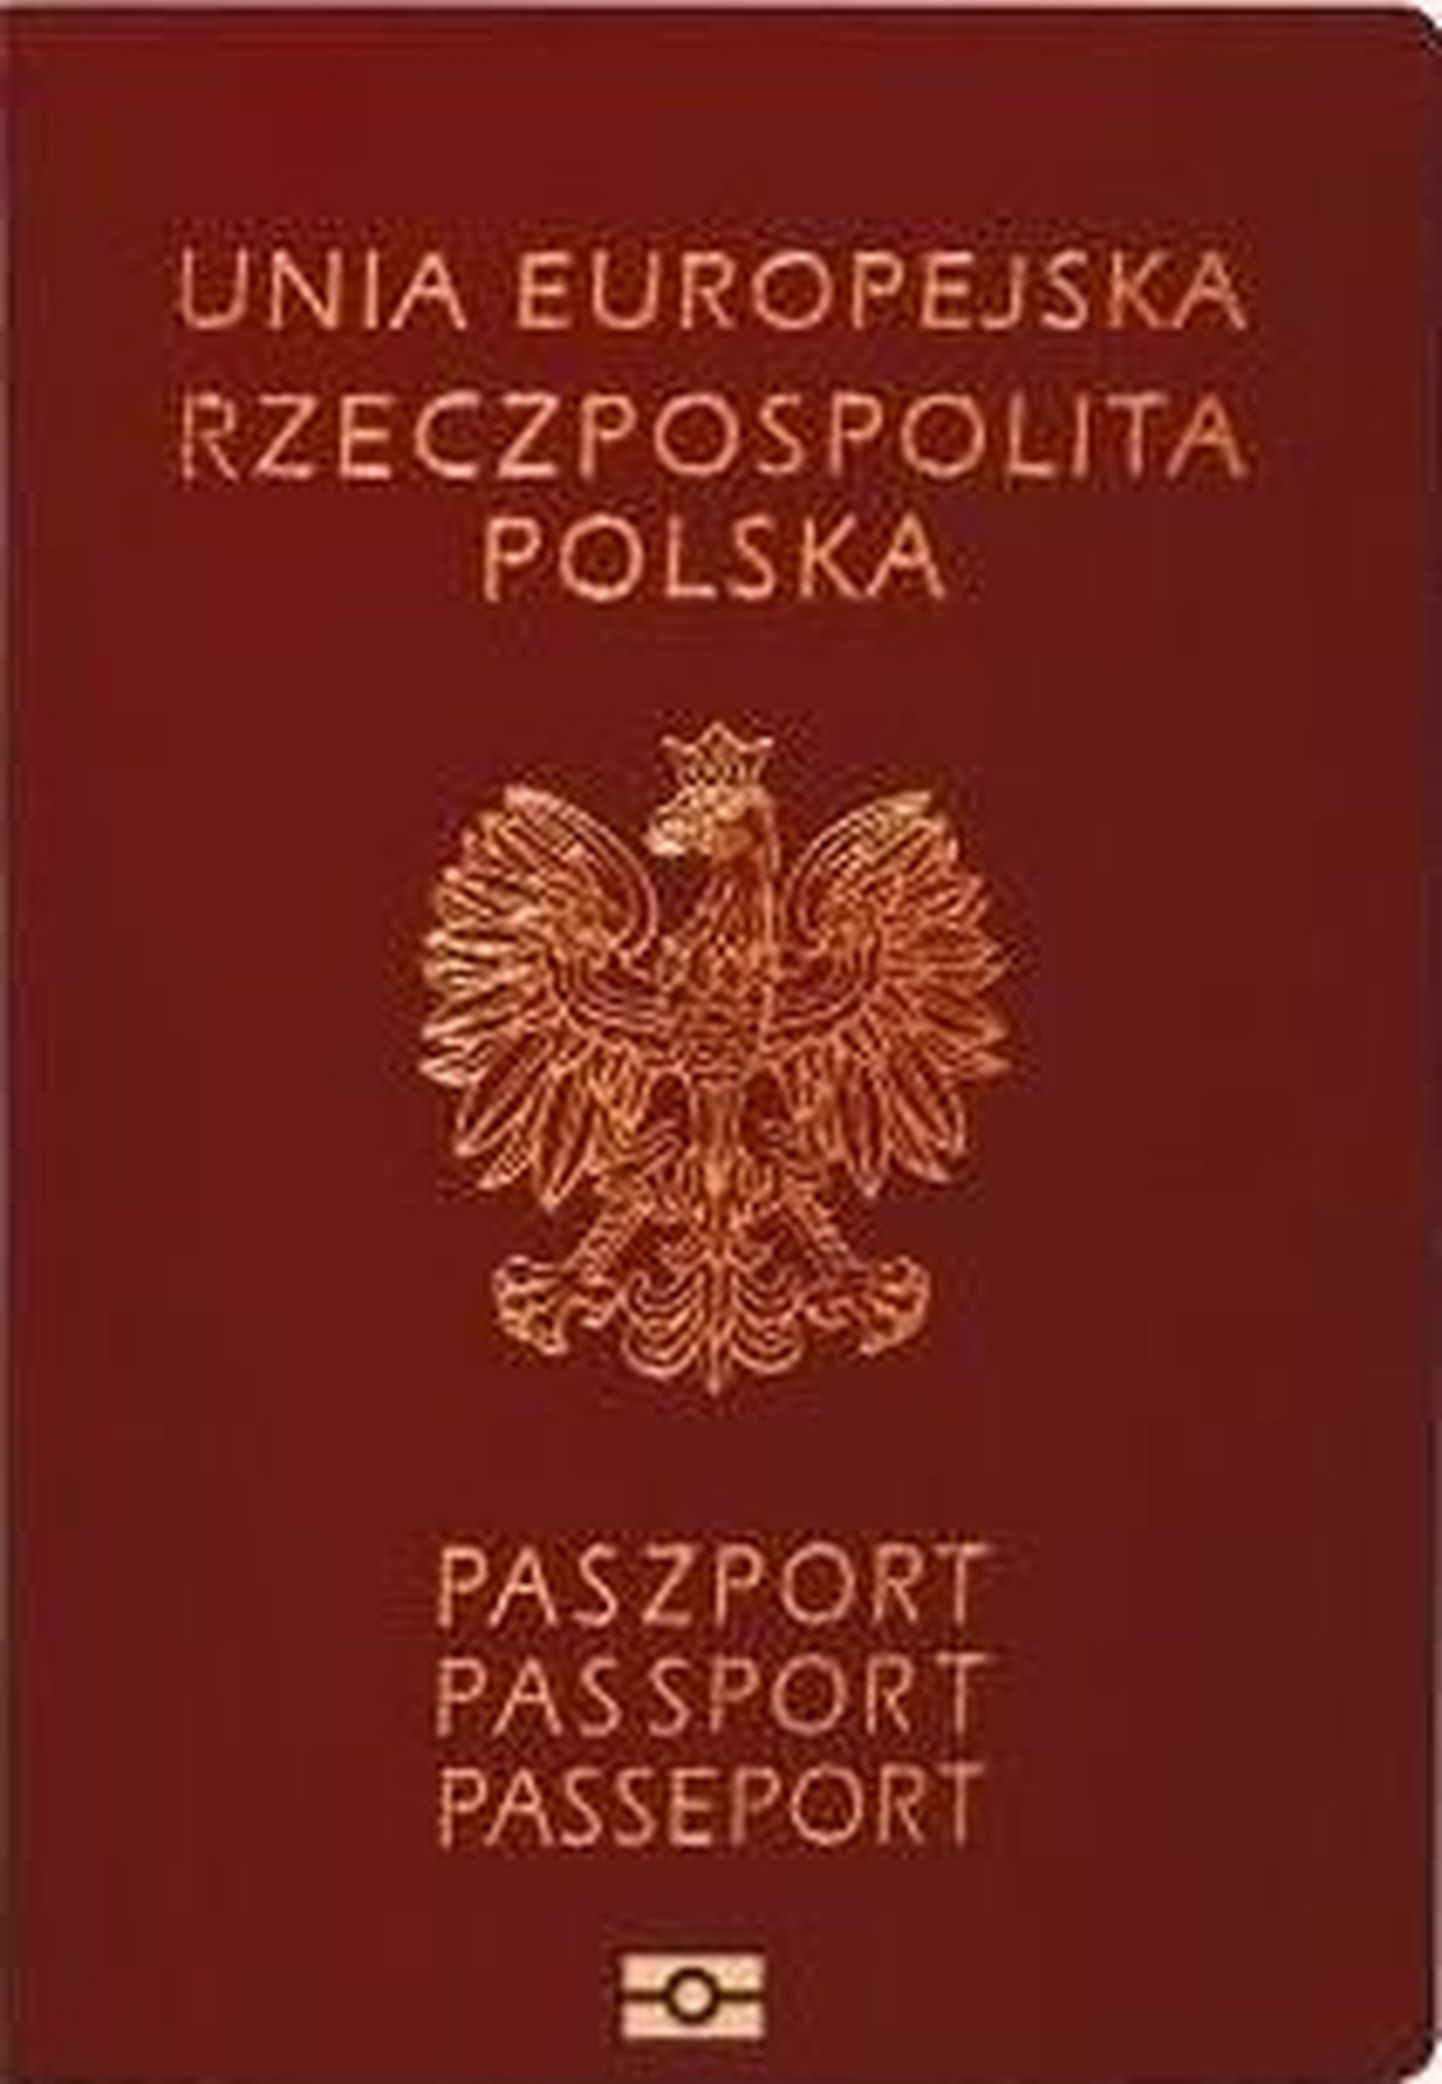 Обложка польского паспорта.